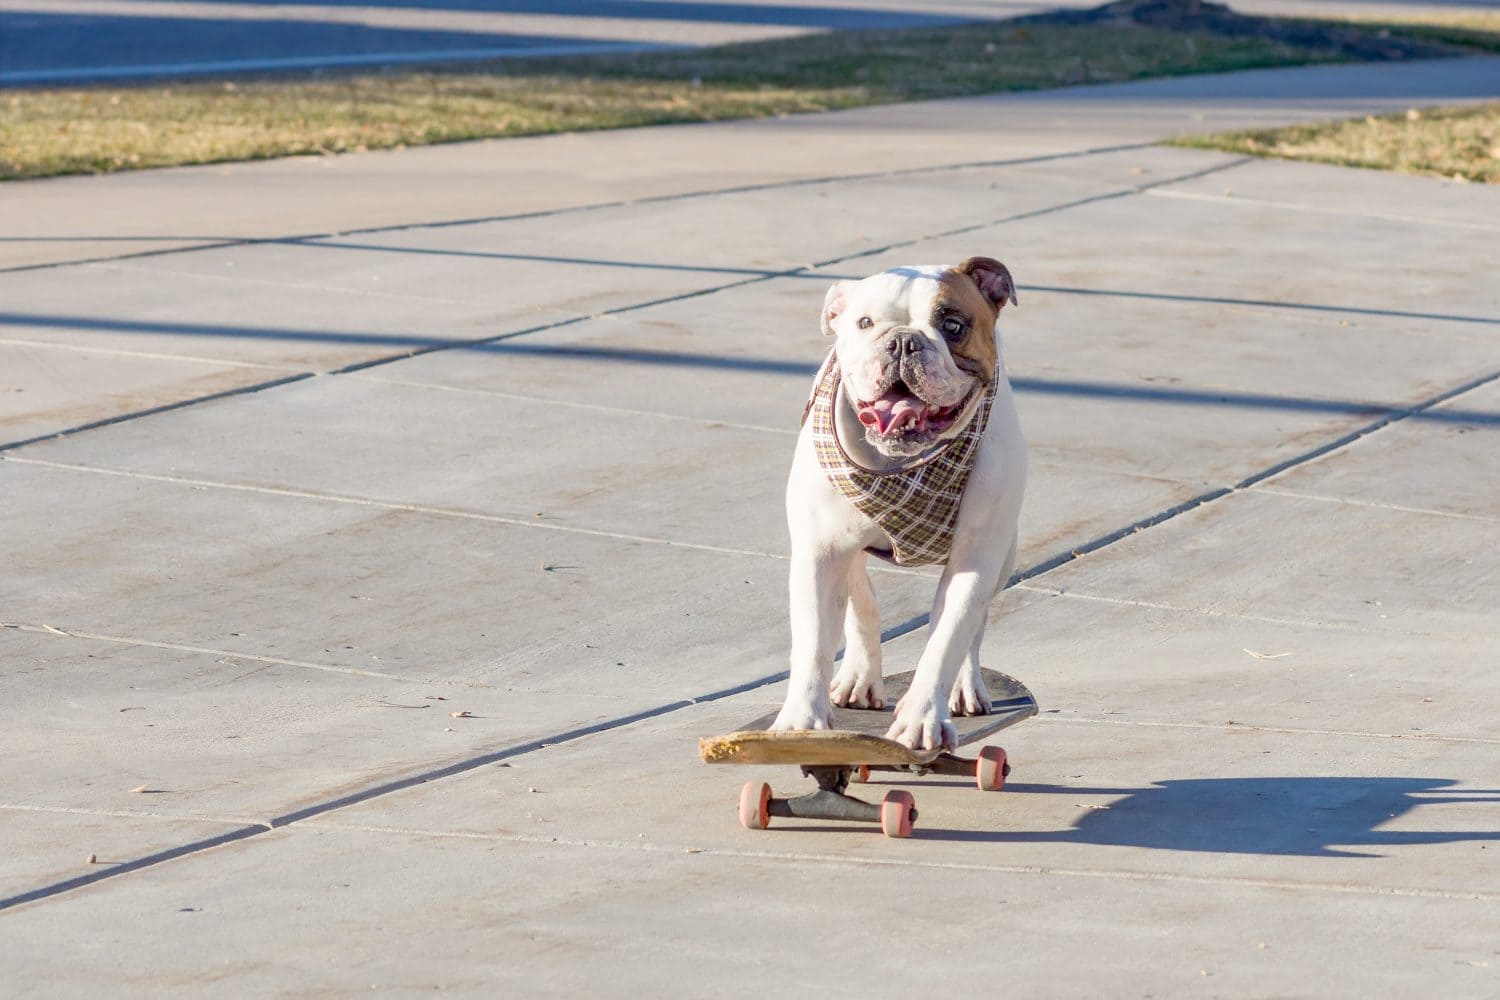 Joyful English bulldog riding a skateboard on the street